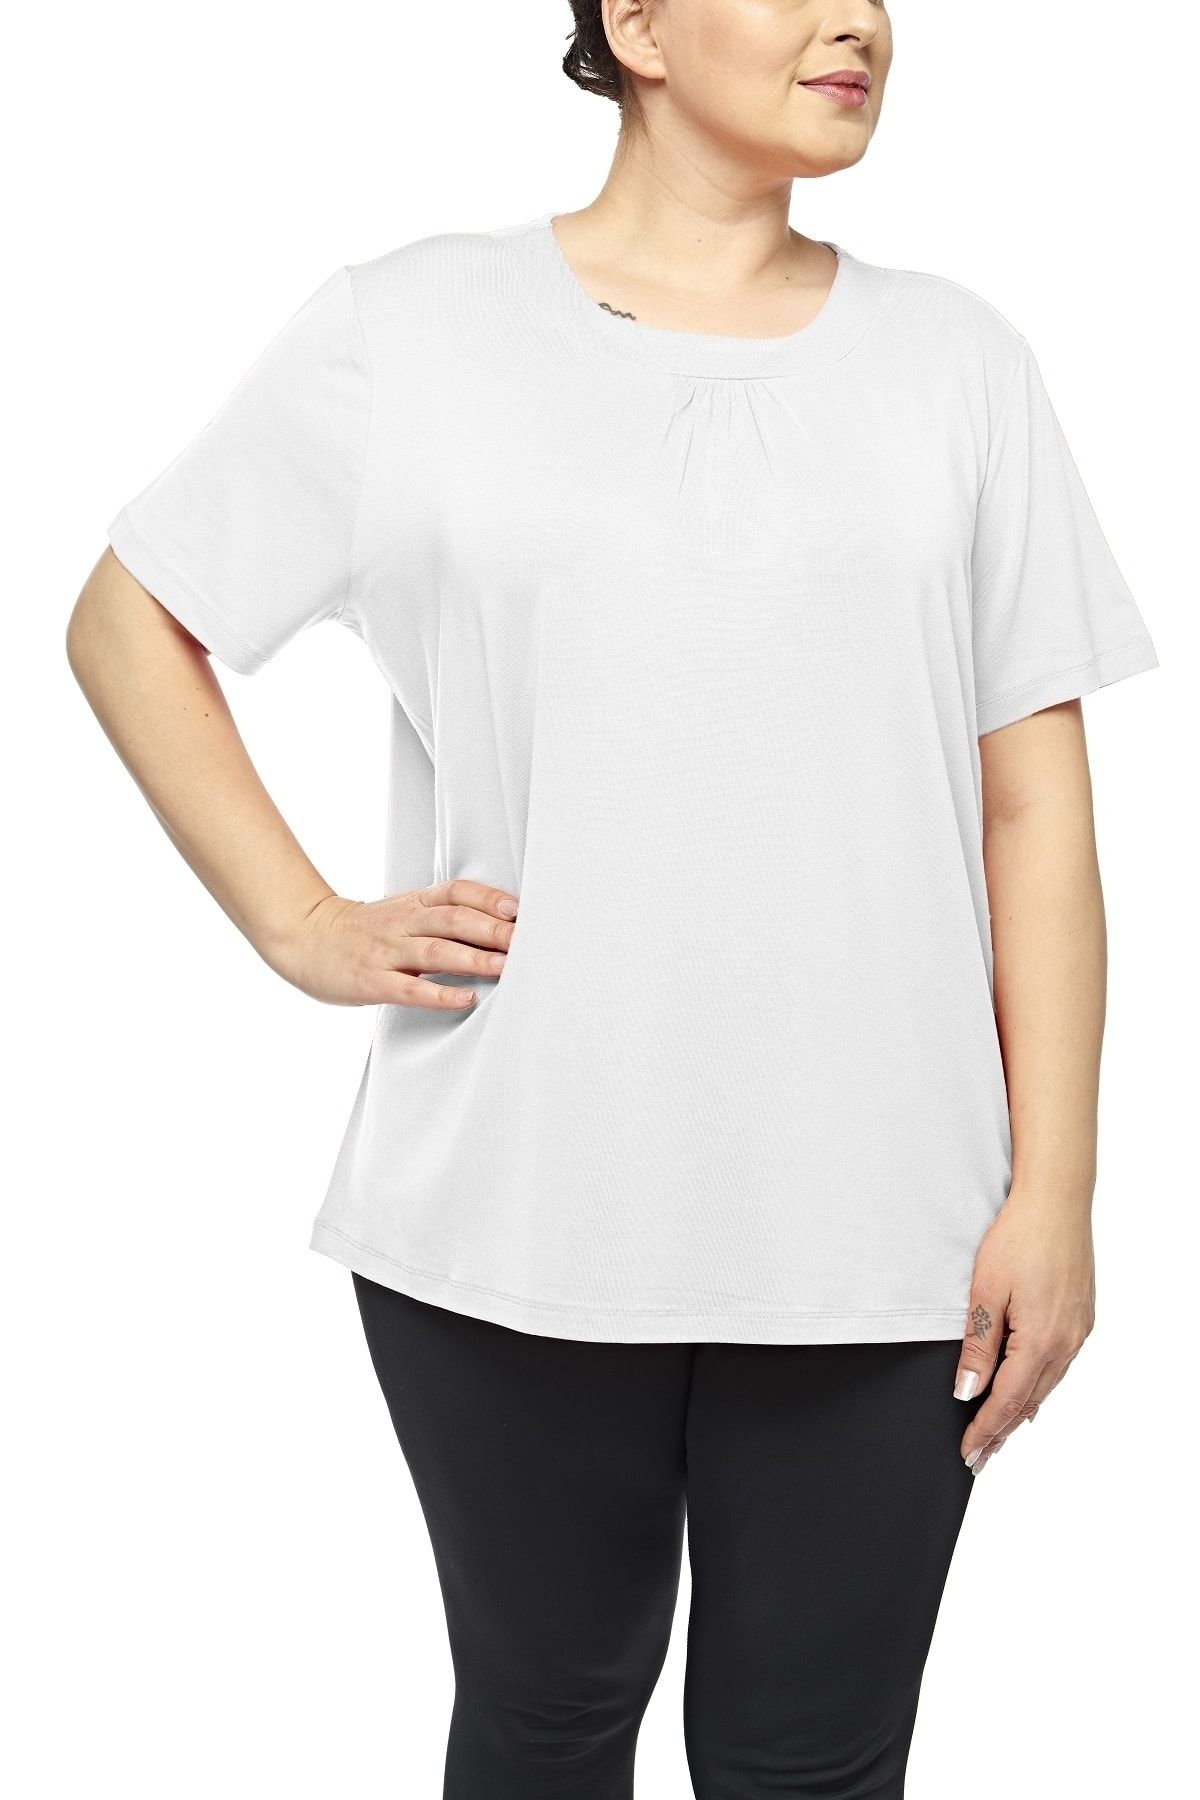 fsm1453 Kadın Modal Viskon Kısa Kolllu Üst Plus Size Likralı T-shirt -2506